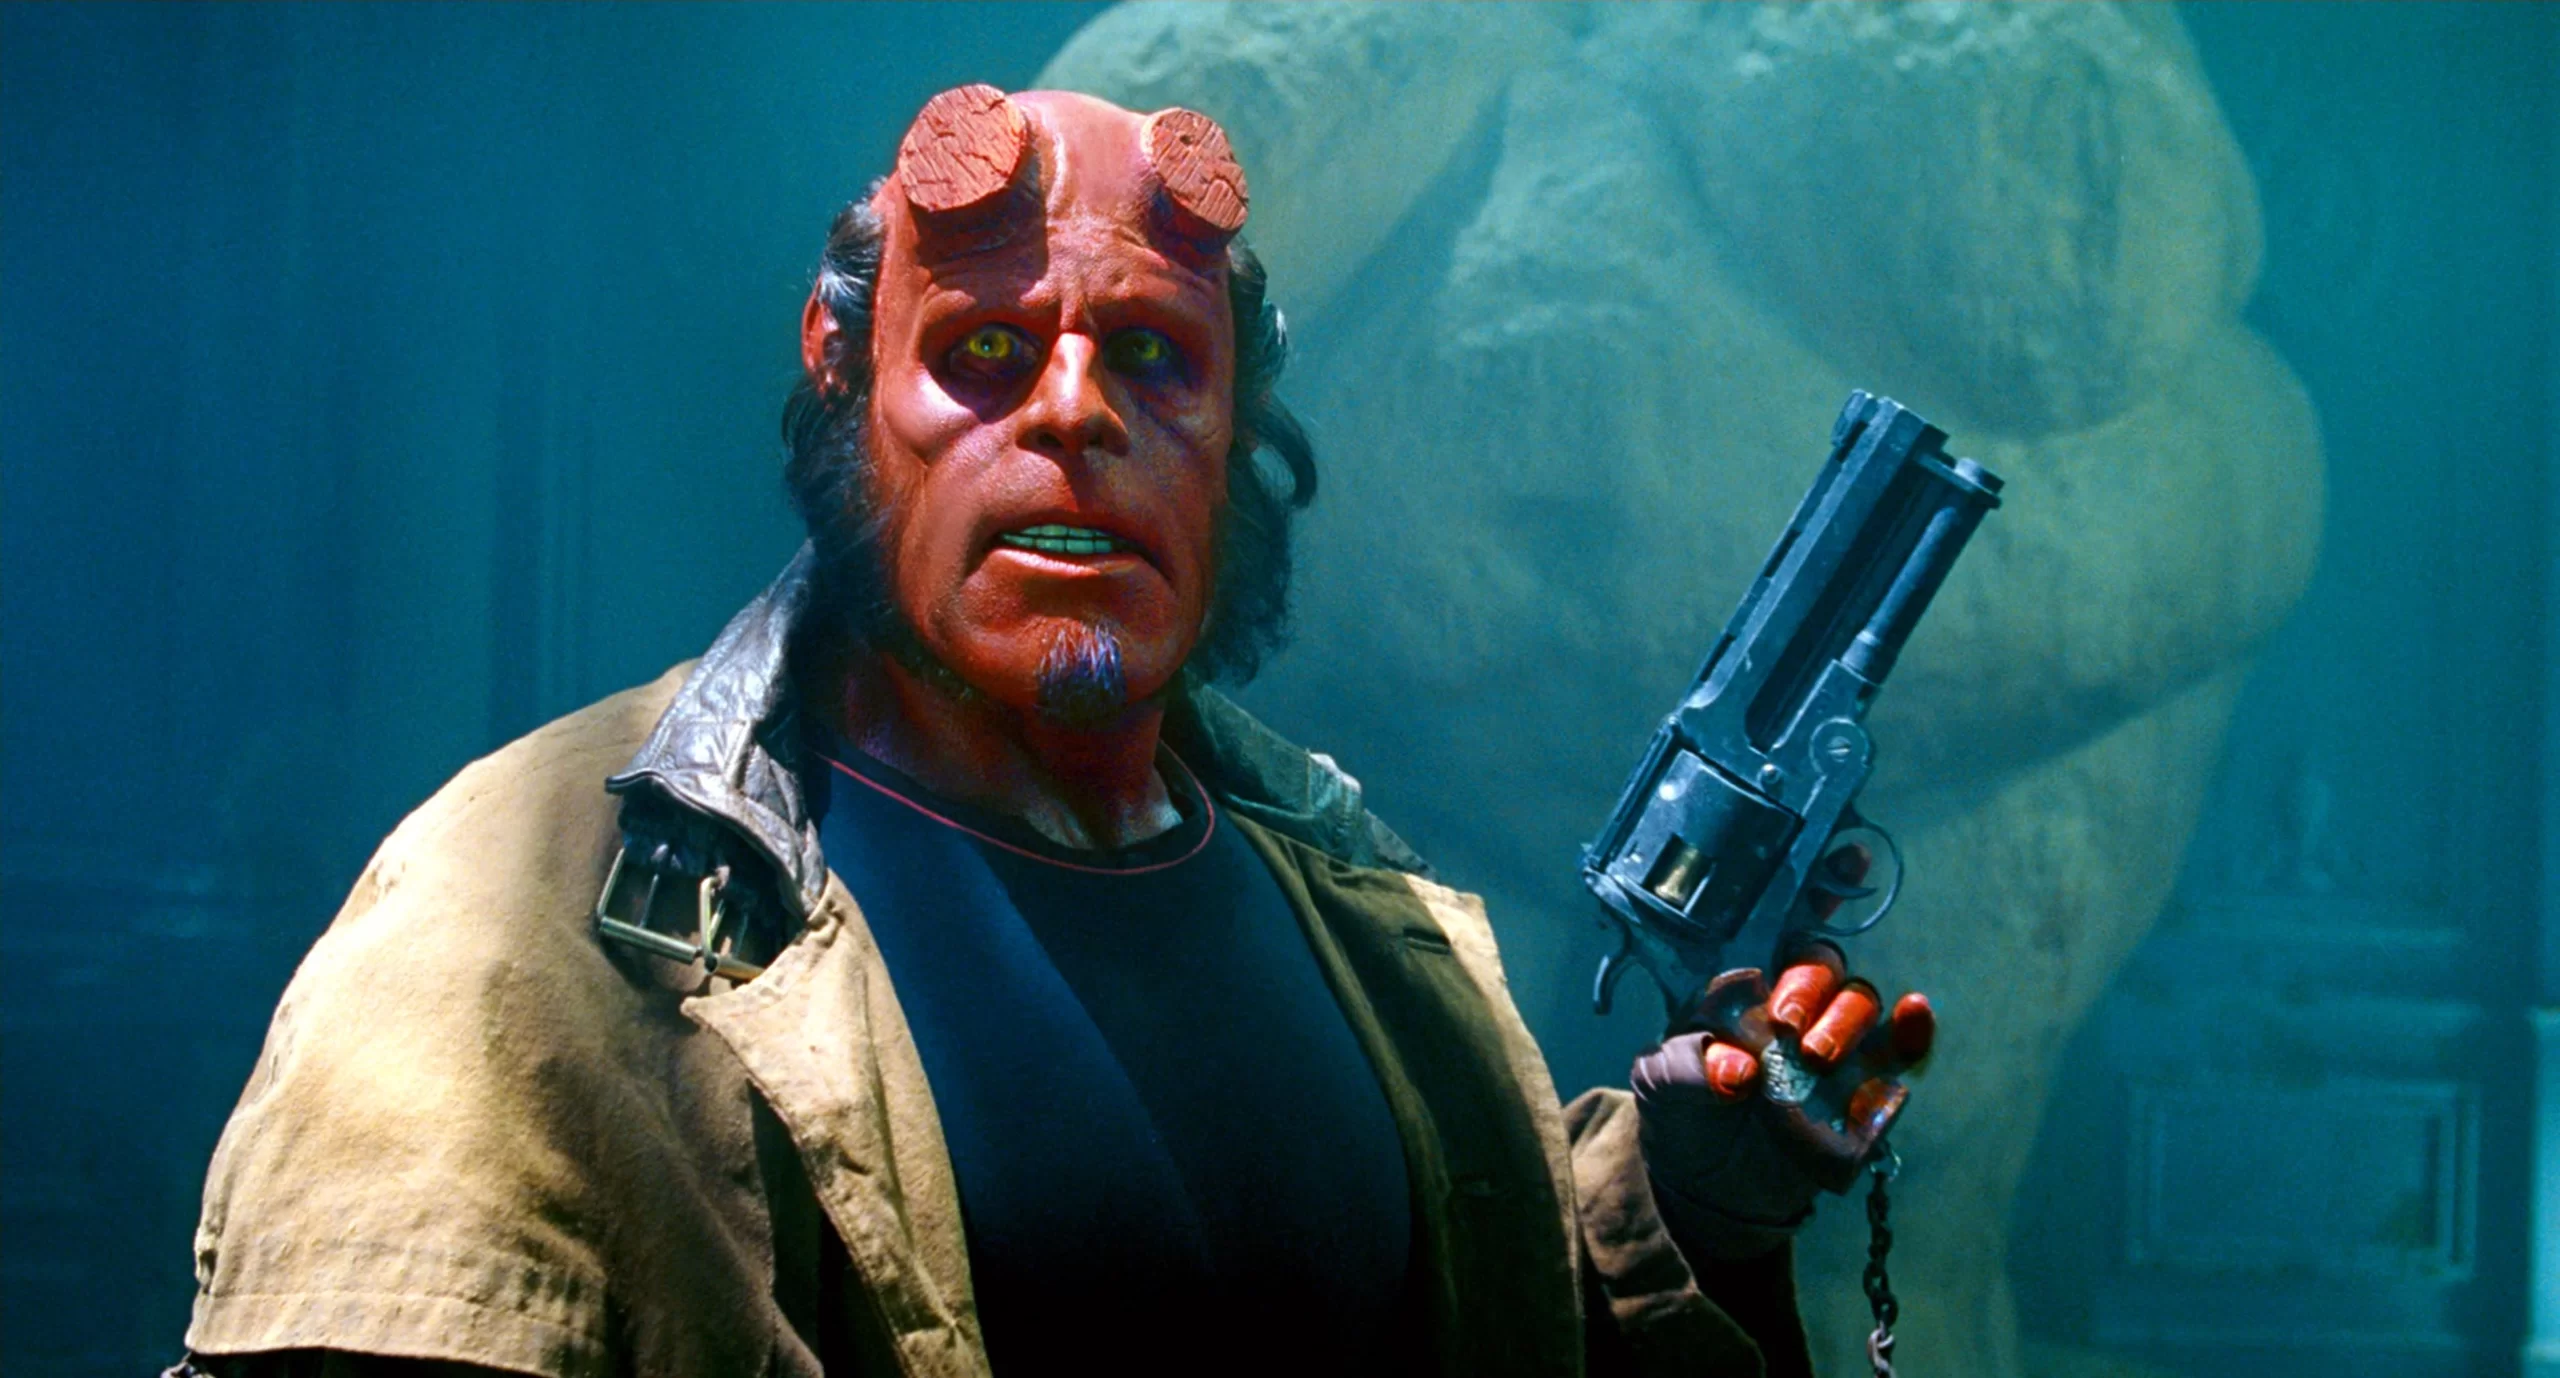 Guillermo Del Toro Movies Ranked - Hellboy